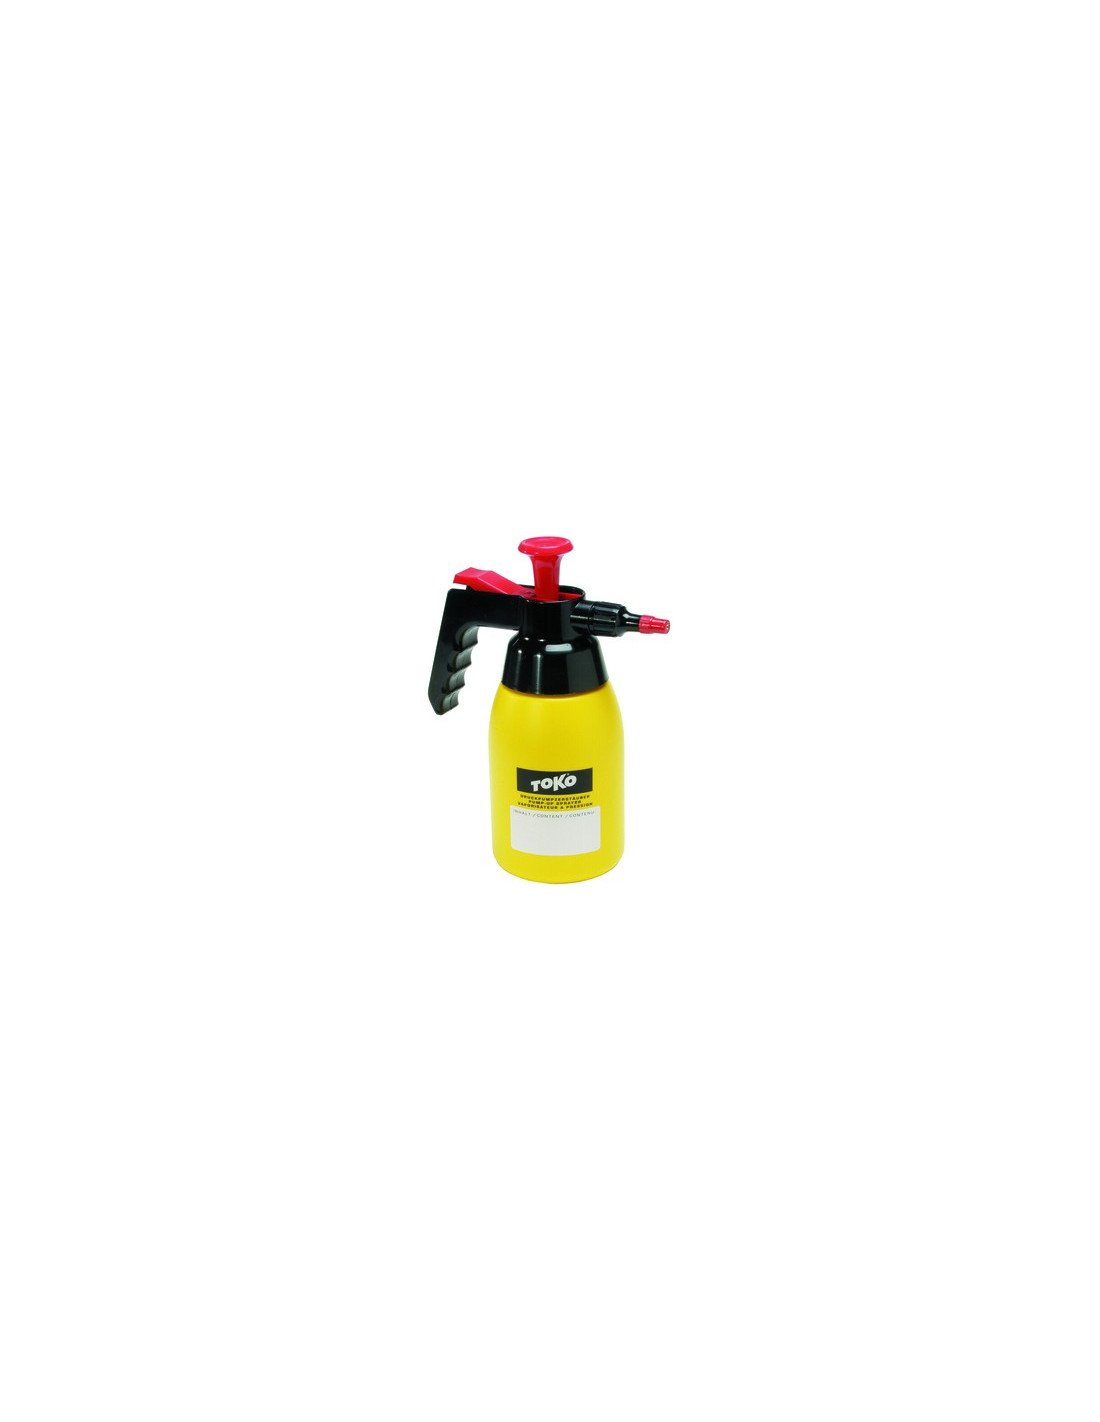 Toko Pump-Up Sprayer Tools - Druckpumpen, von Toko